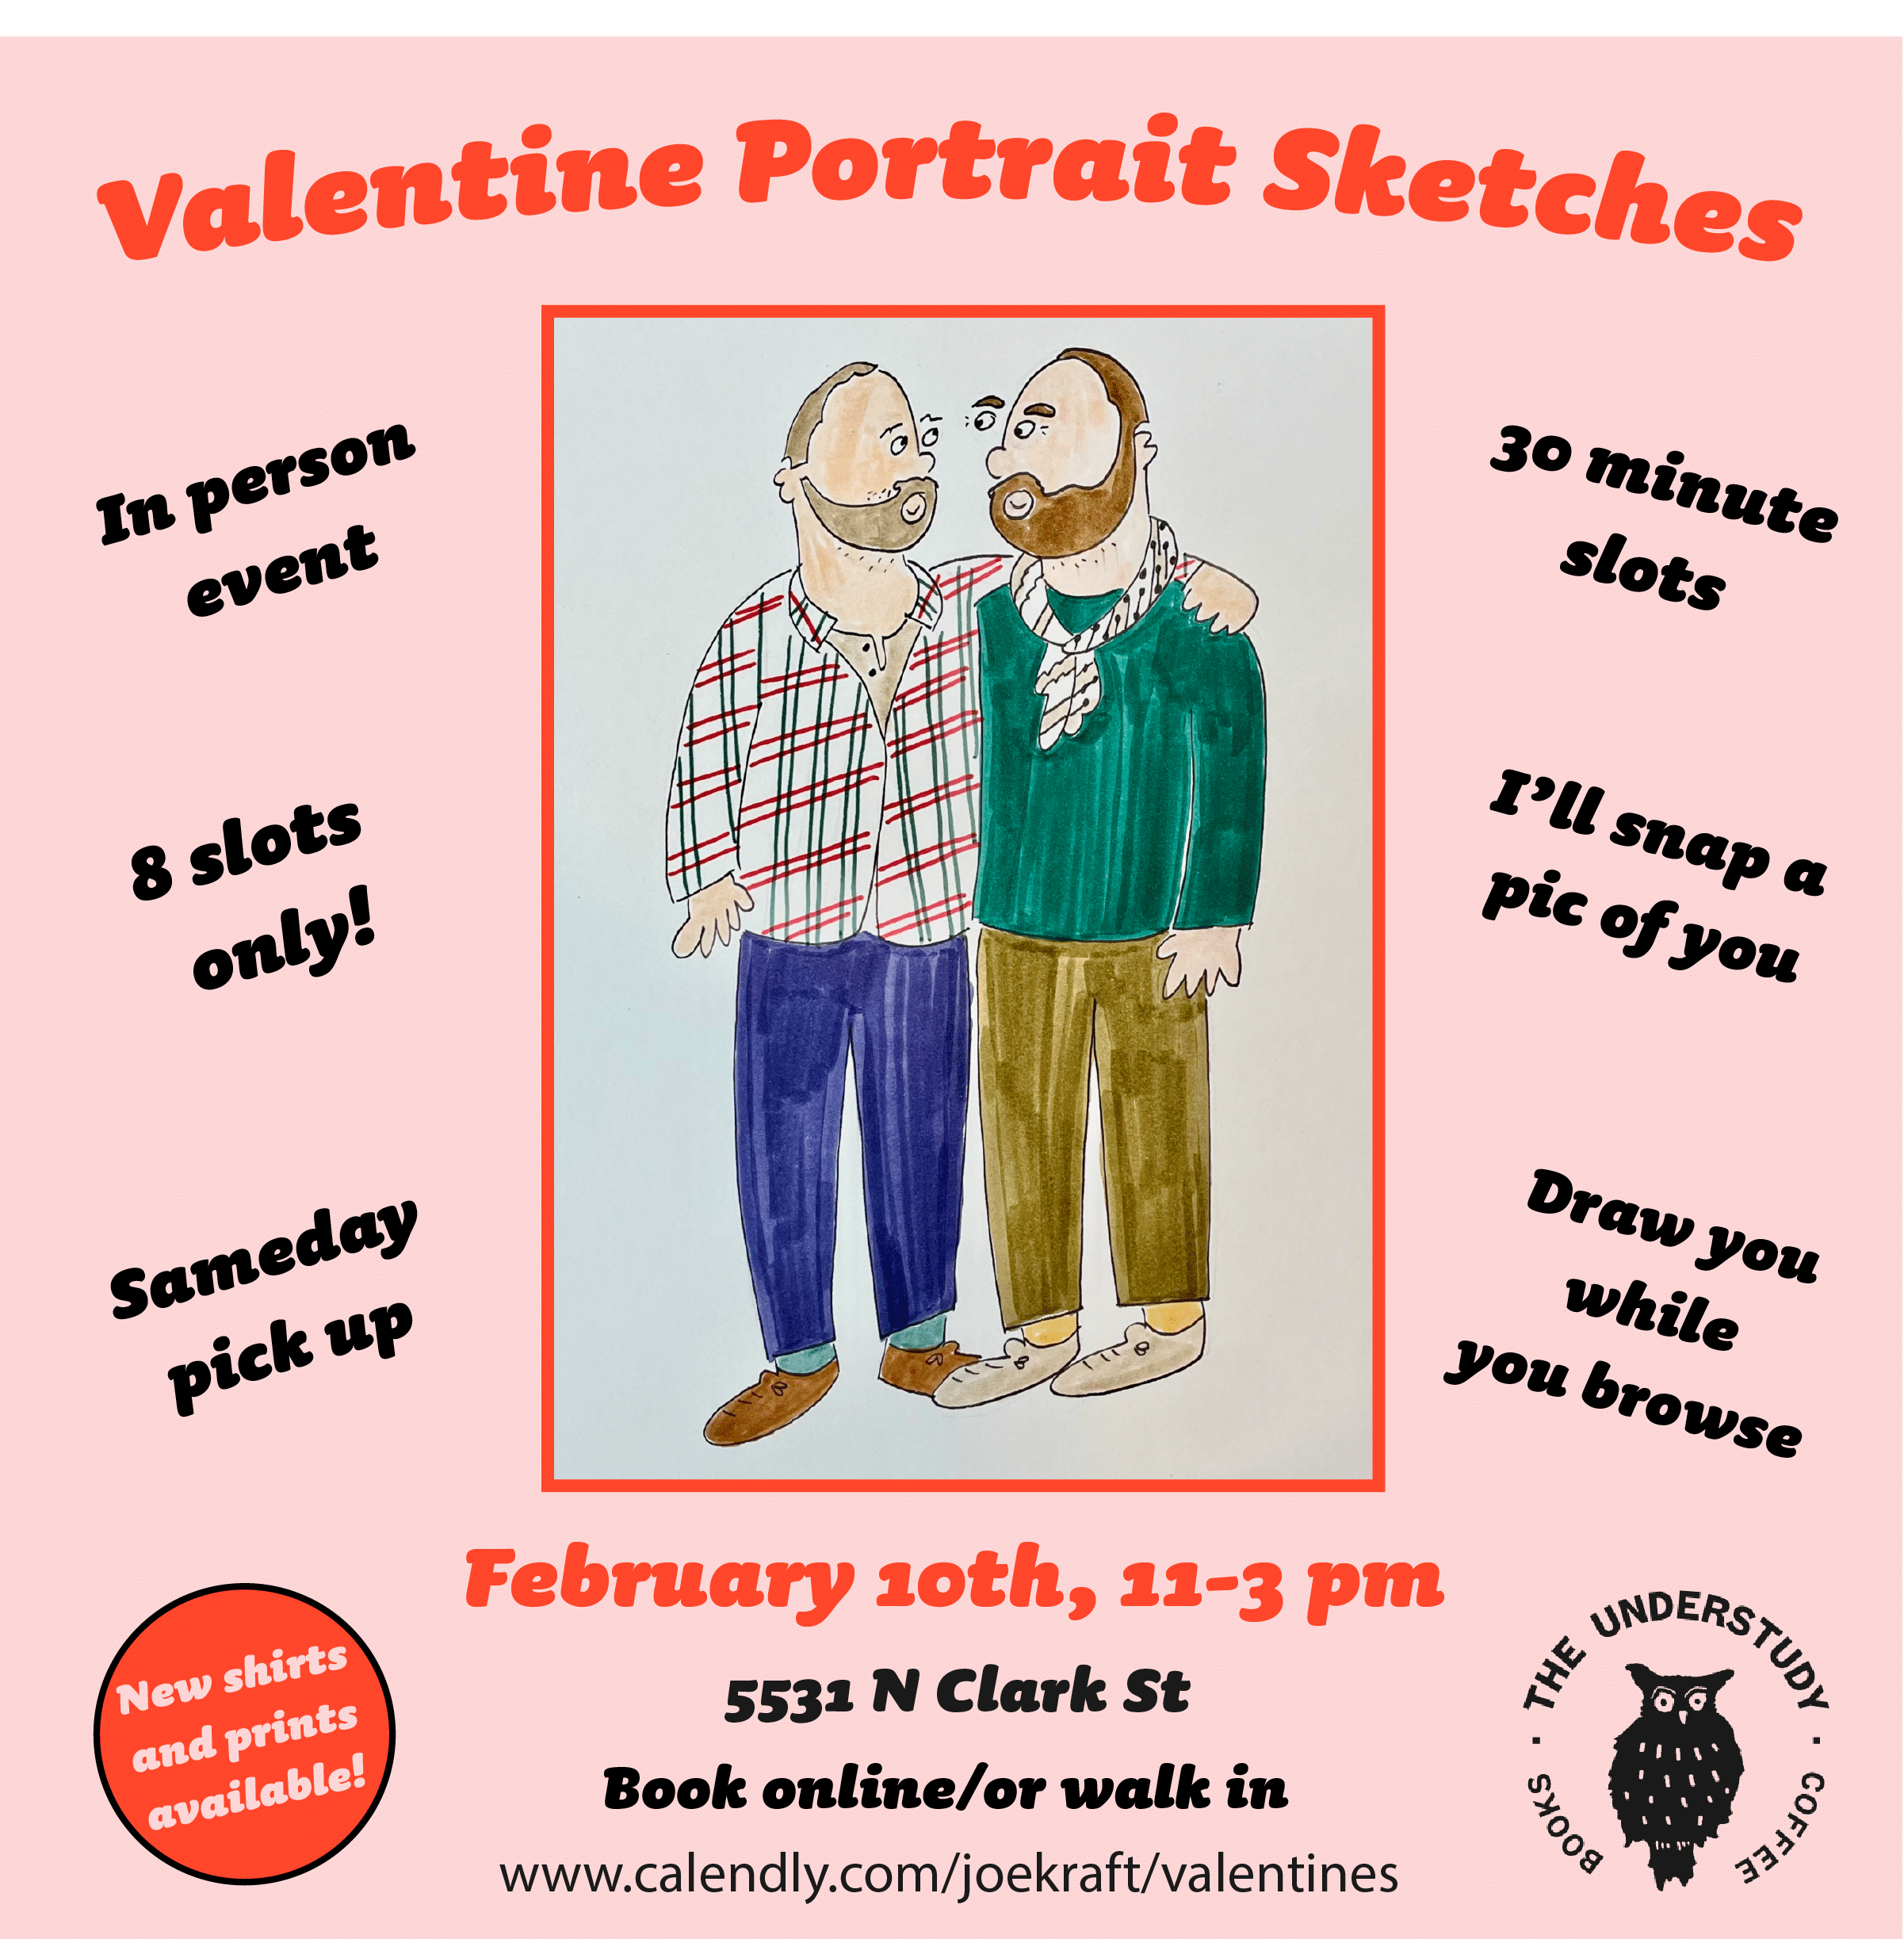 Valentine Portrait Sketches with Joe Kraft